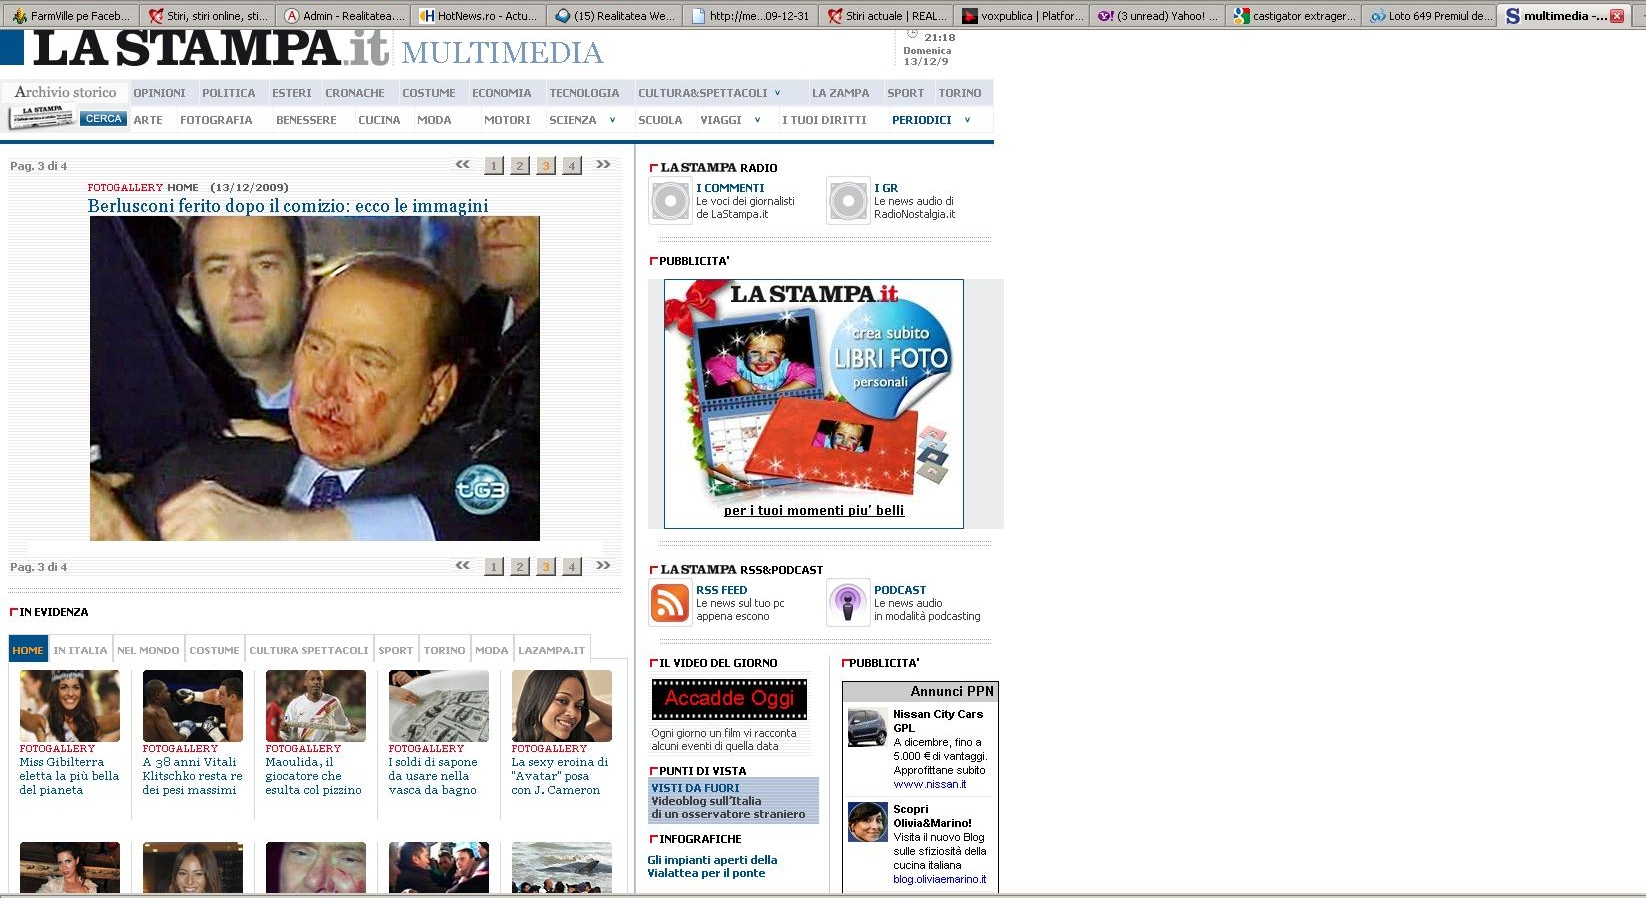 Berlusconi a fost pus la pământ cu un pumn